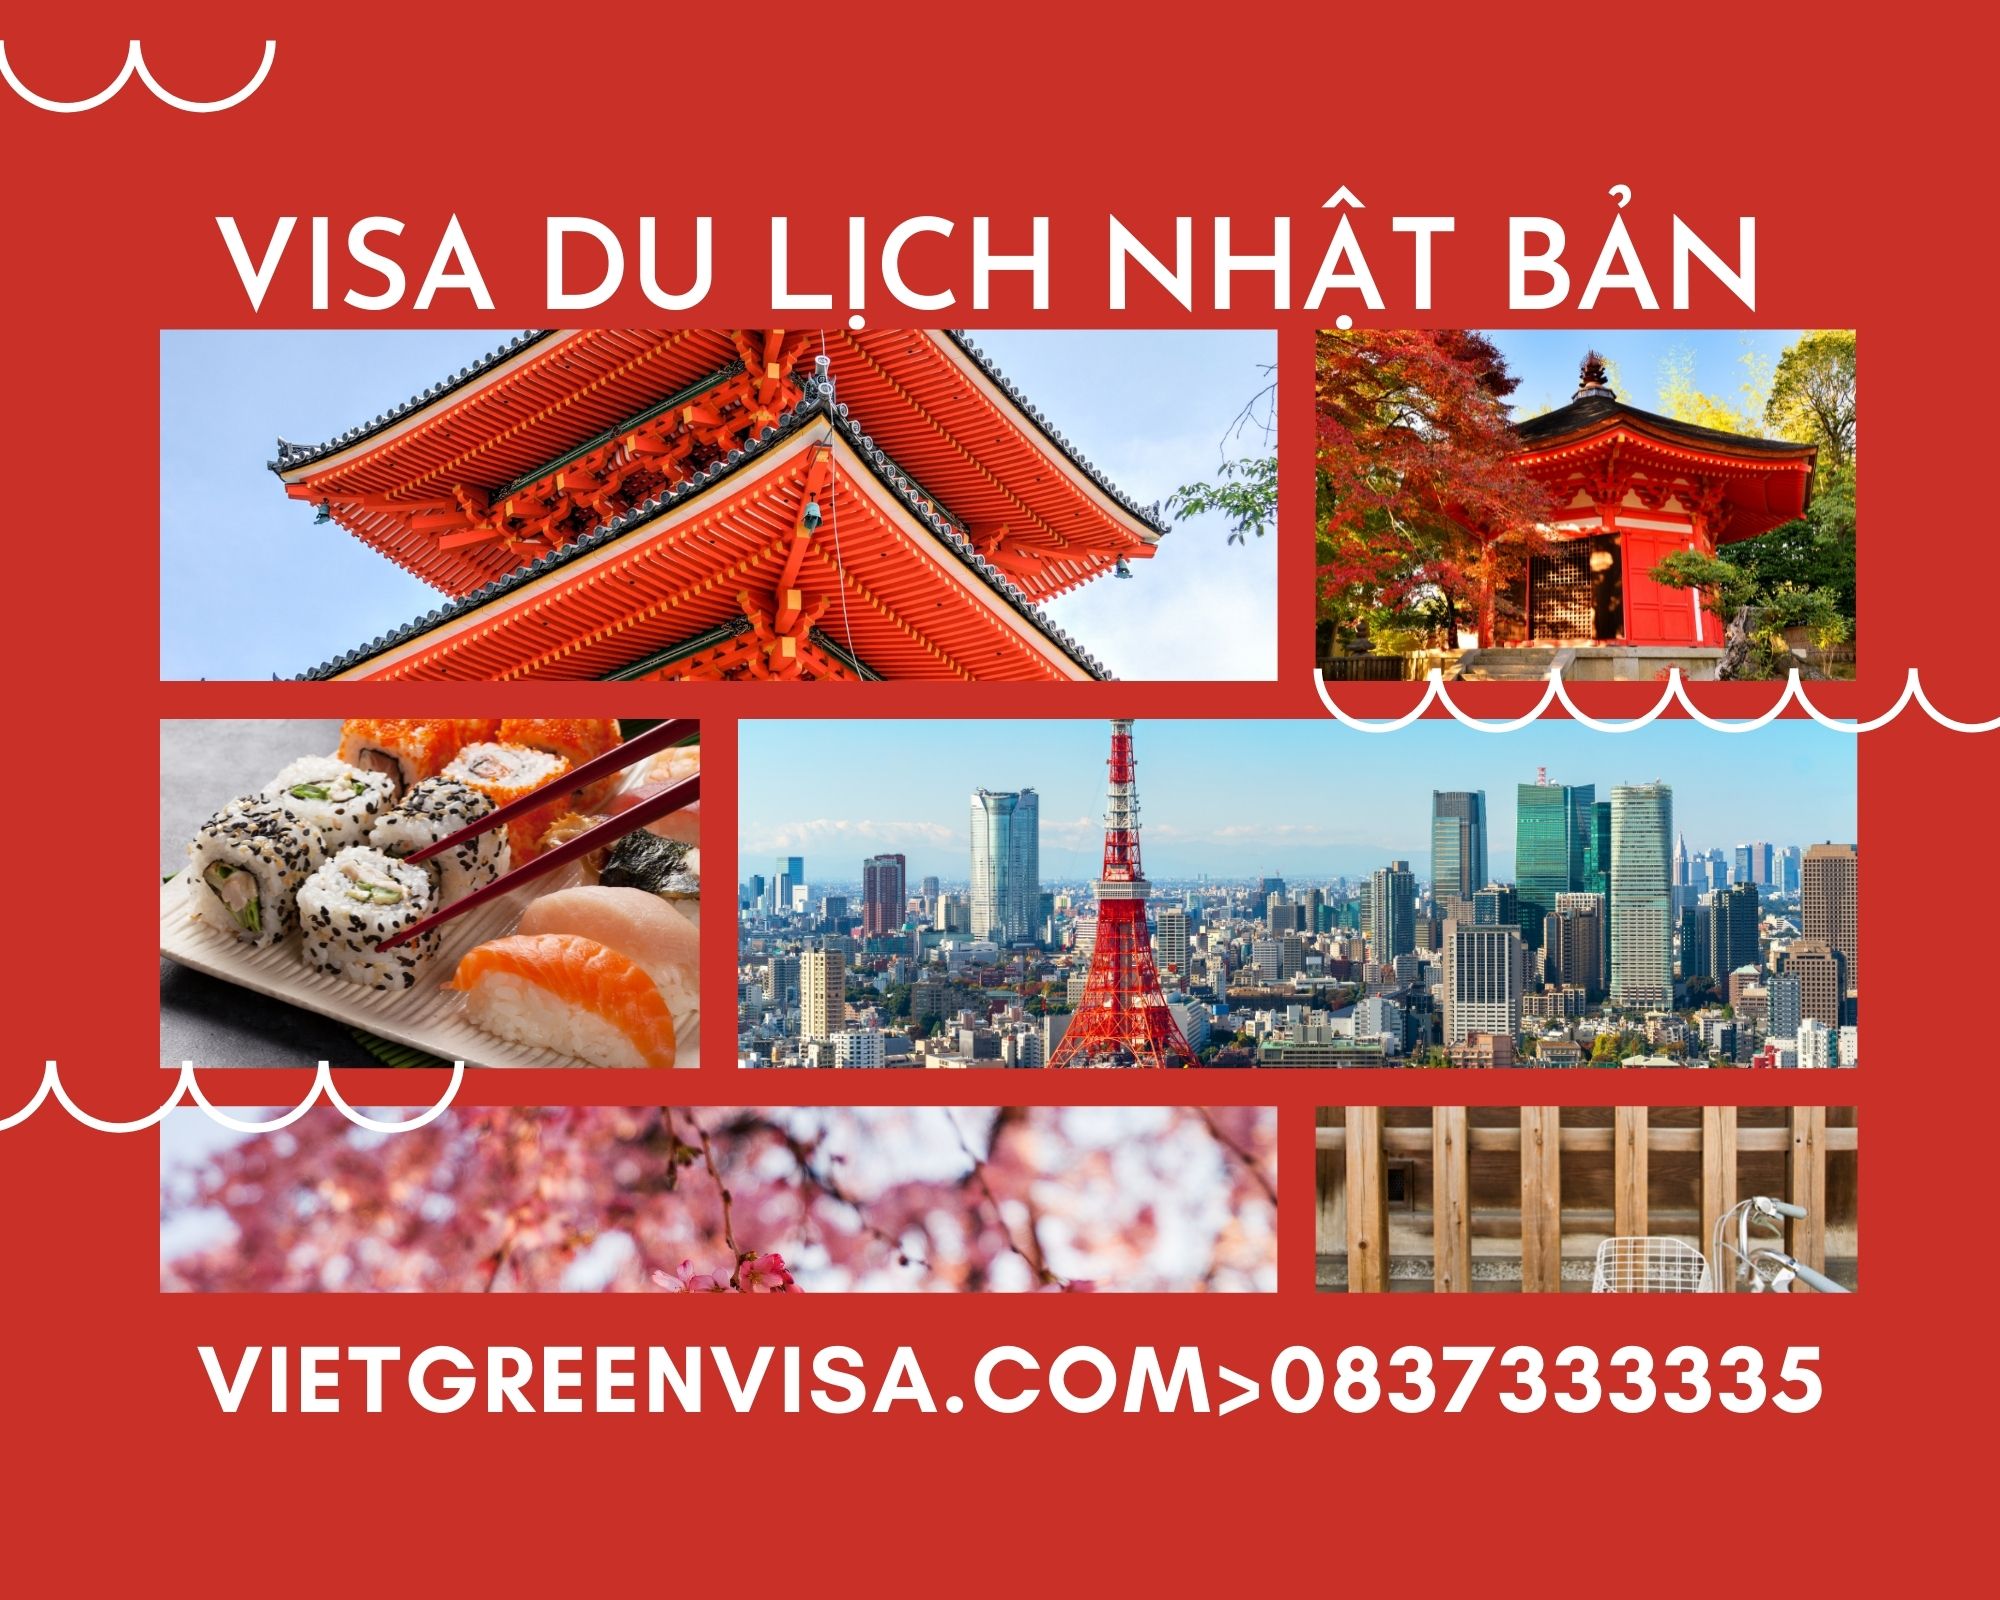 Dịch vụ xin Visa du lịch Nhật Bản uy tín. Du Lịch Xanh